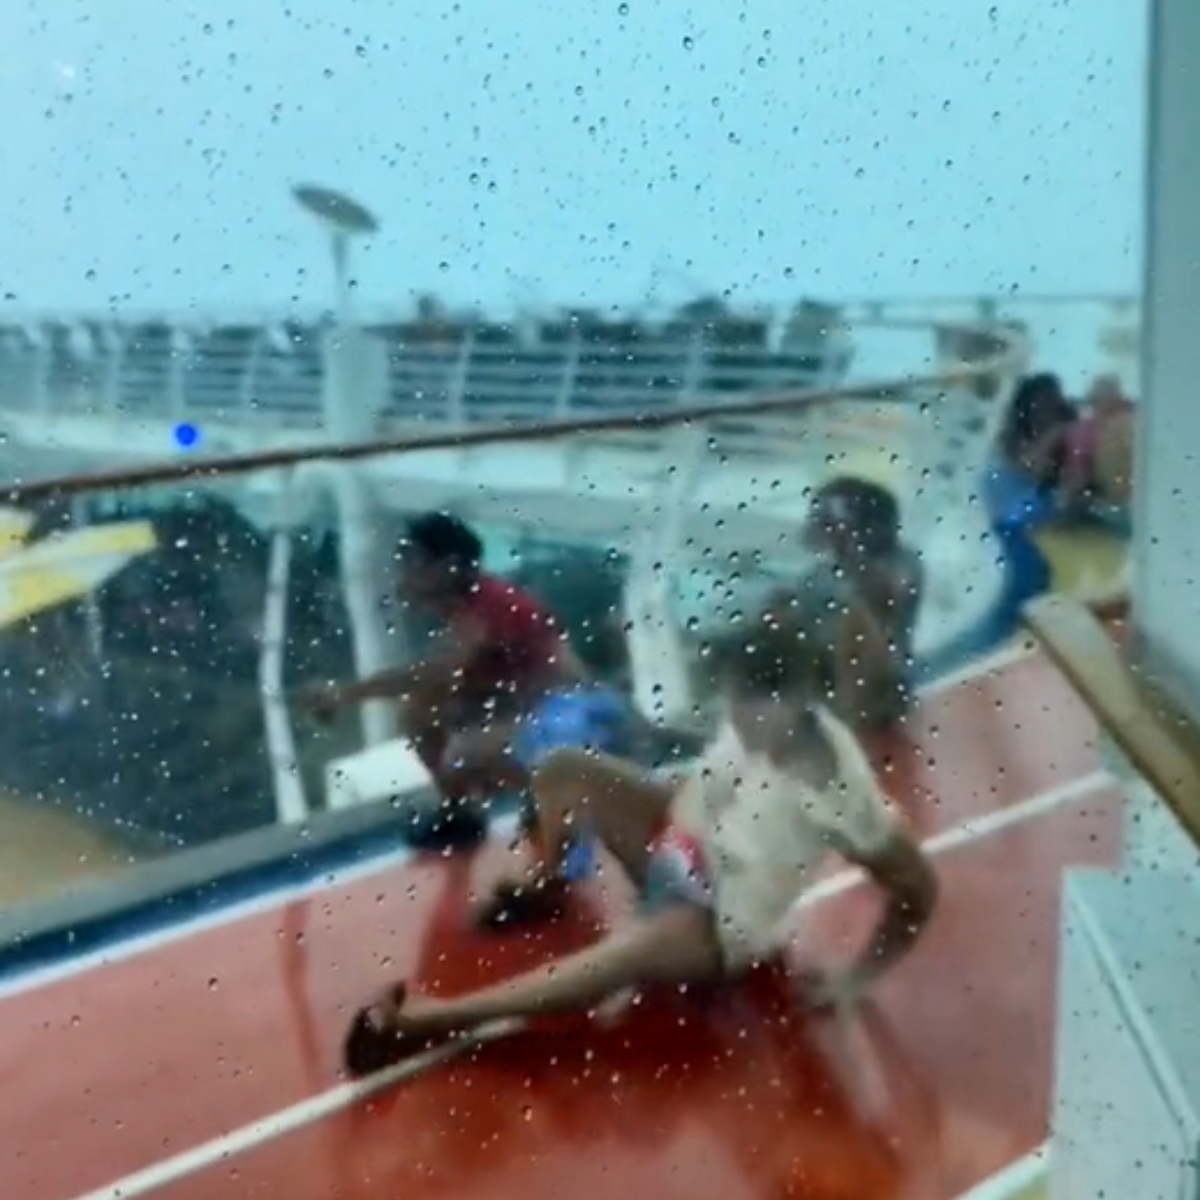  VÍDEO: Cadeiras voam e pessoas são arrastadas em cruzeiro atingido por furacão 